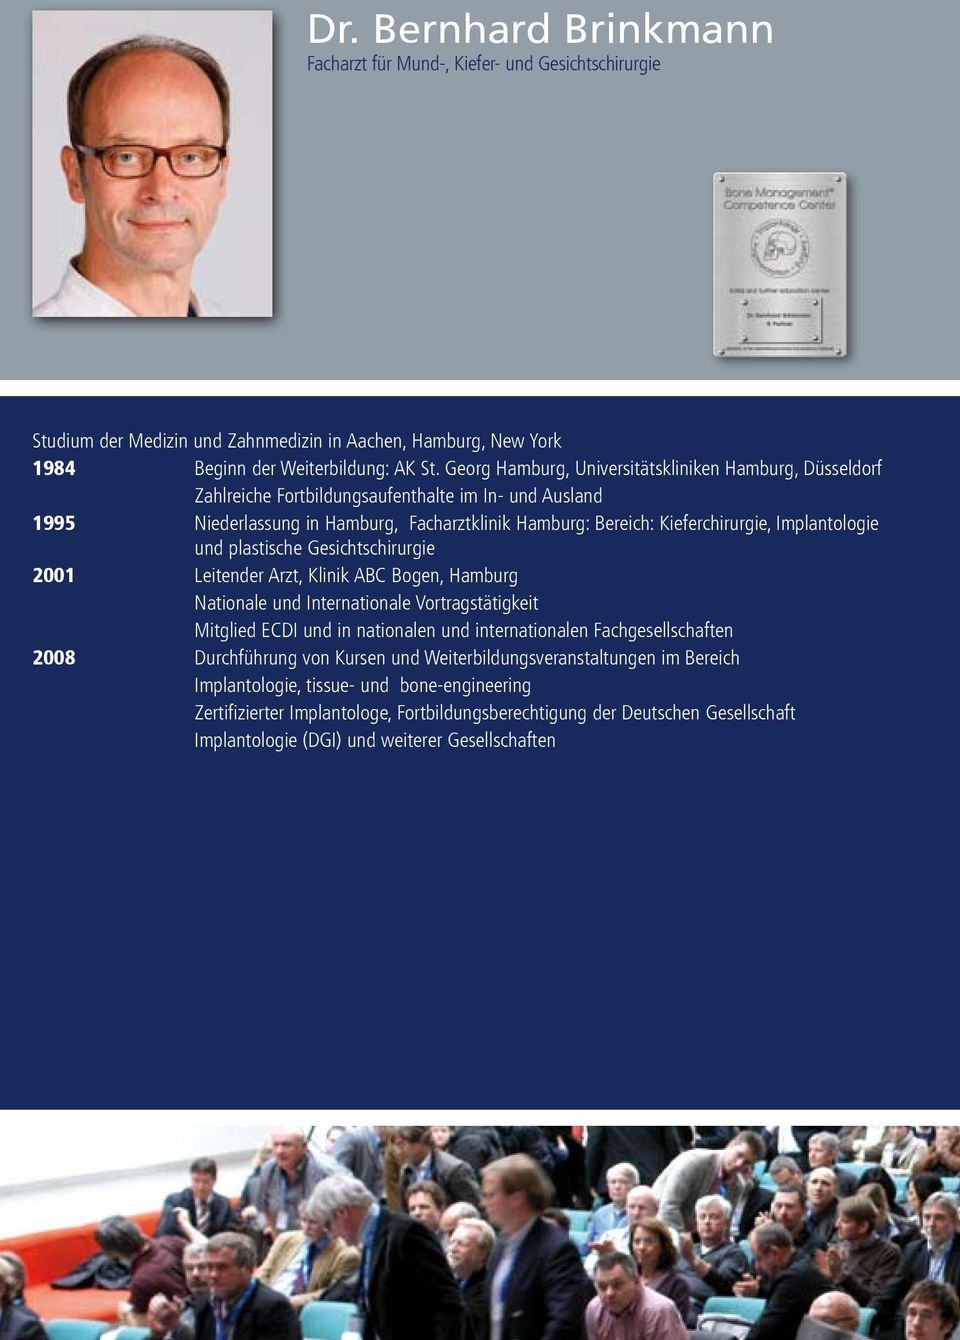 Implantologie und plastische Gesichtschirurgie 2001 Leitender Arzt, Klinik ABC Bogen, Hamburg Nationale und Internationale Vortragstätigkeit Mitglied ECDI und in nationalen und internationalen